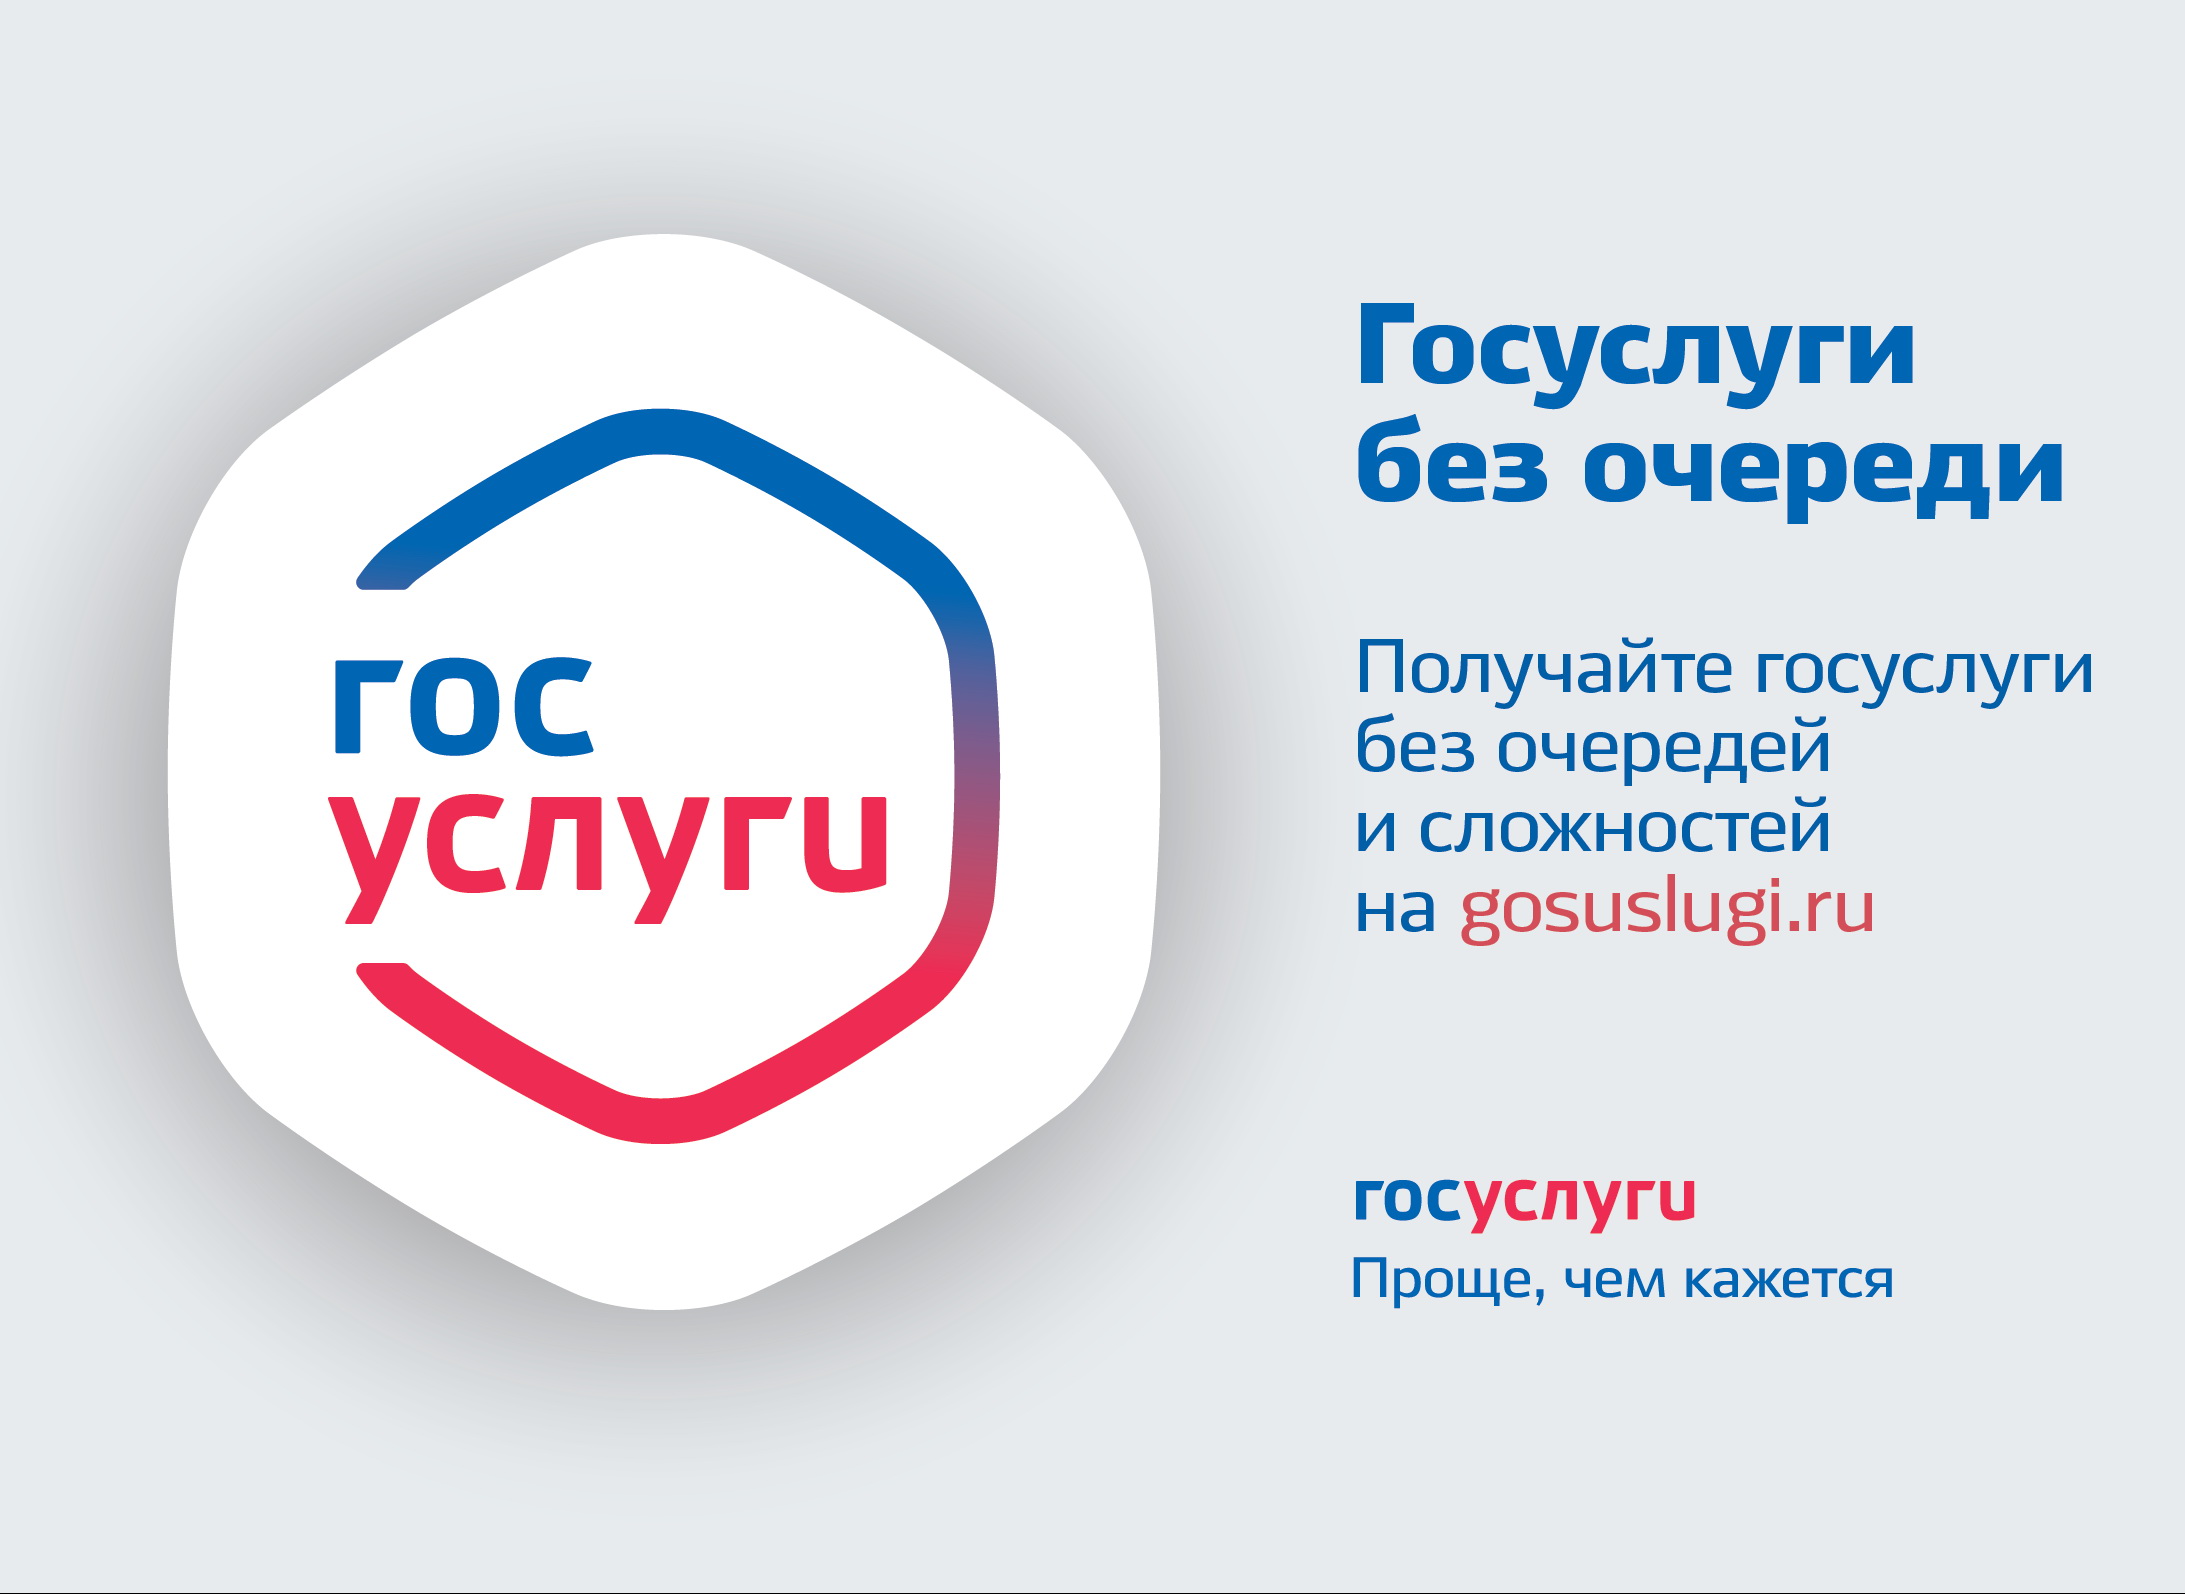 57 массовых социально значимых услуг переведены в электронный вид в Республике Алтай